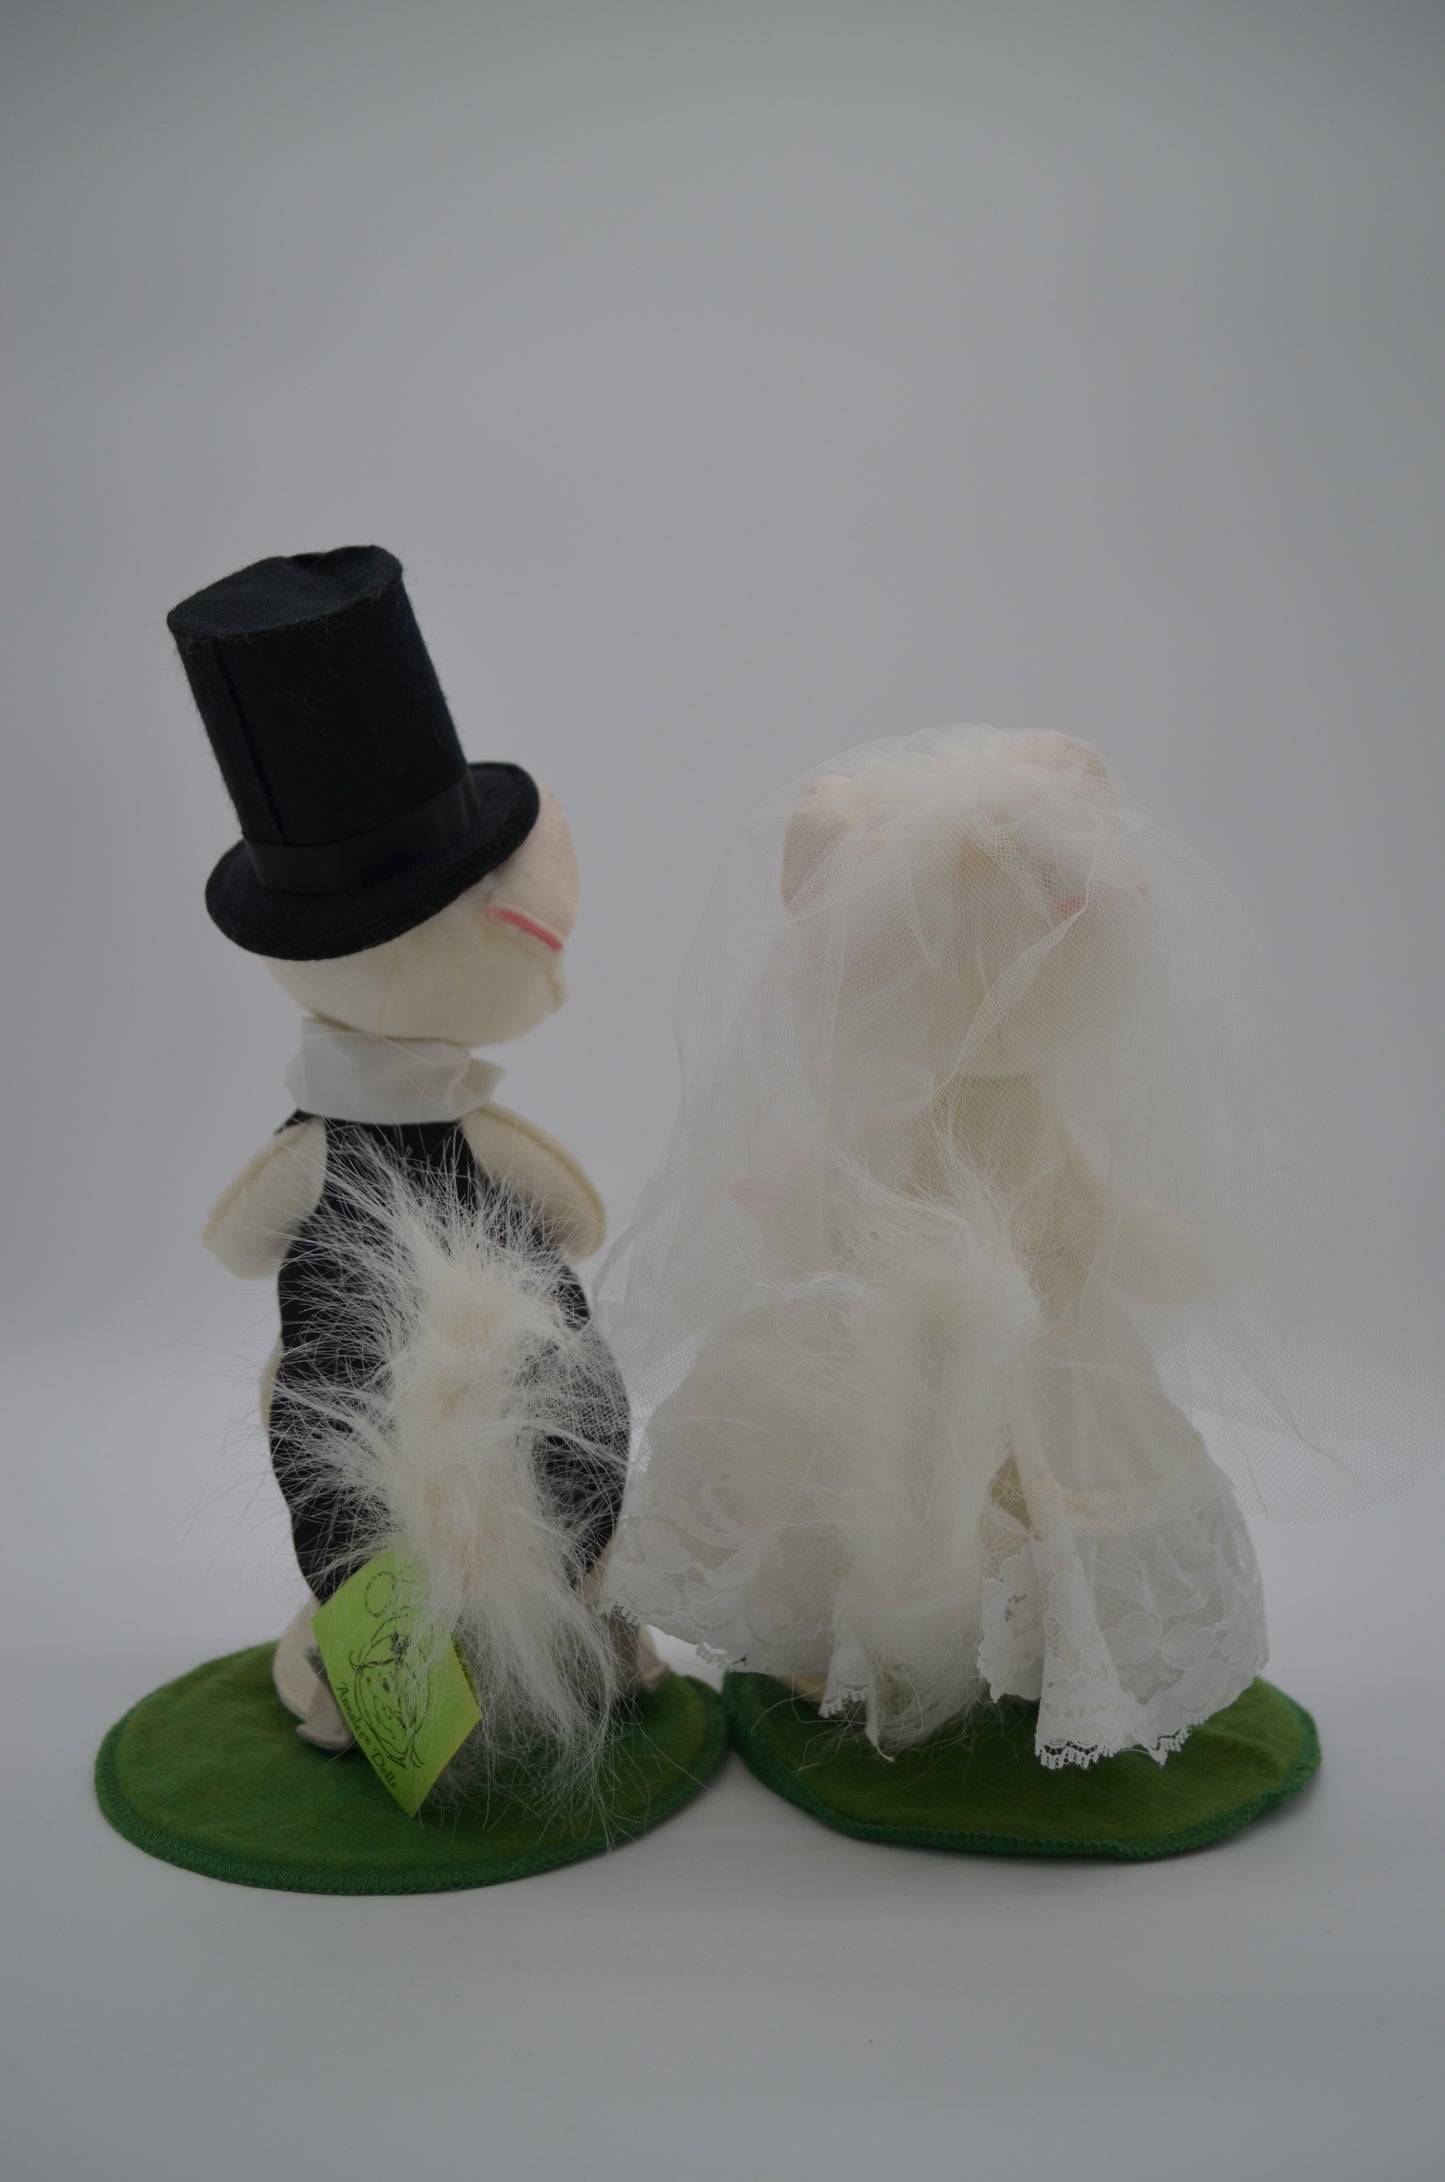 10" Bride & Groom Cats 2904-2902-87 Annalee